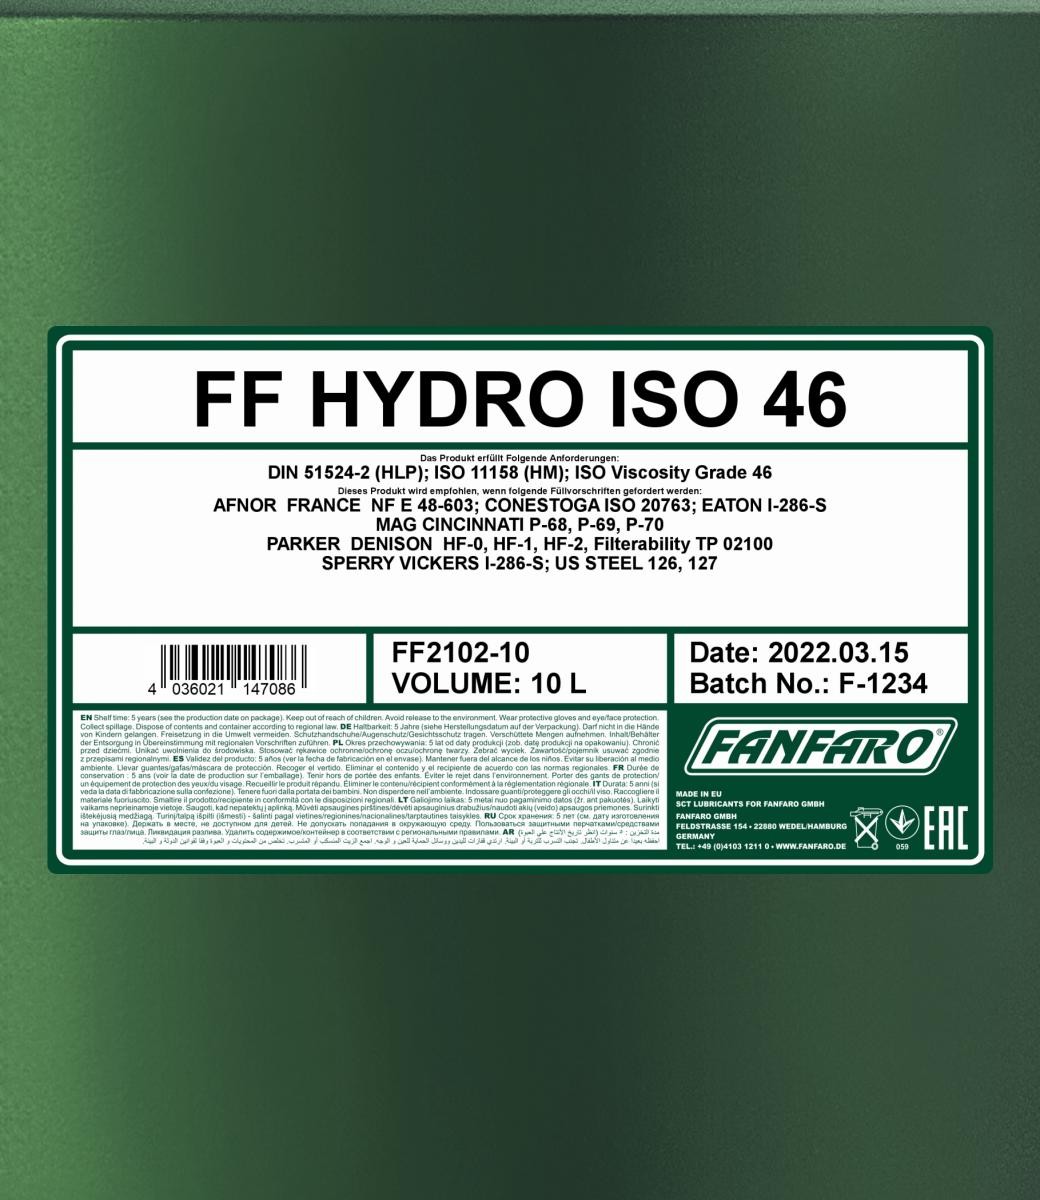 FANFARO Hydraulic fluid FF2102-10